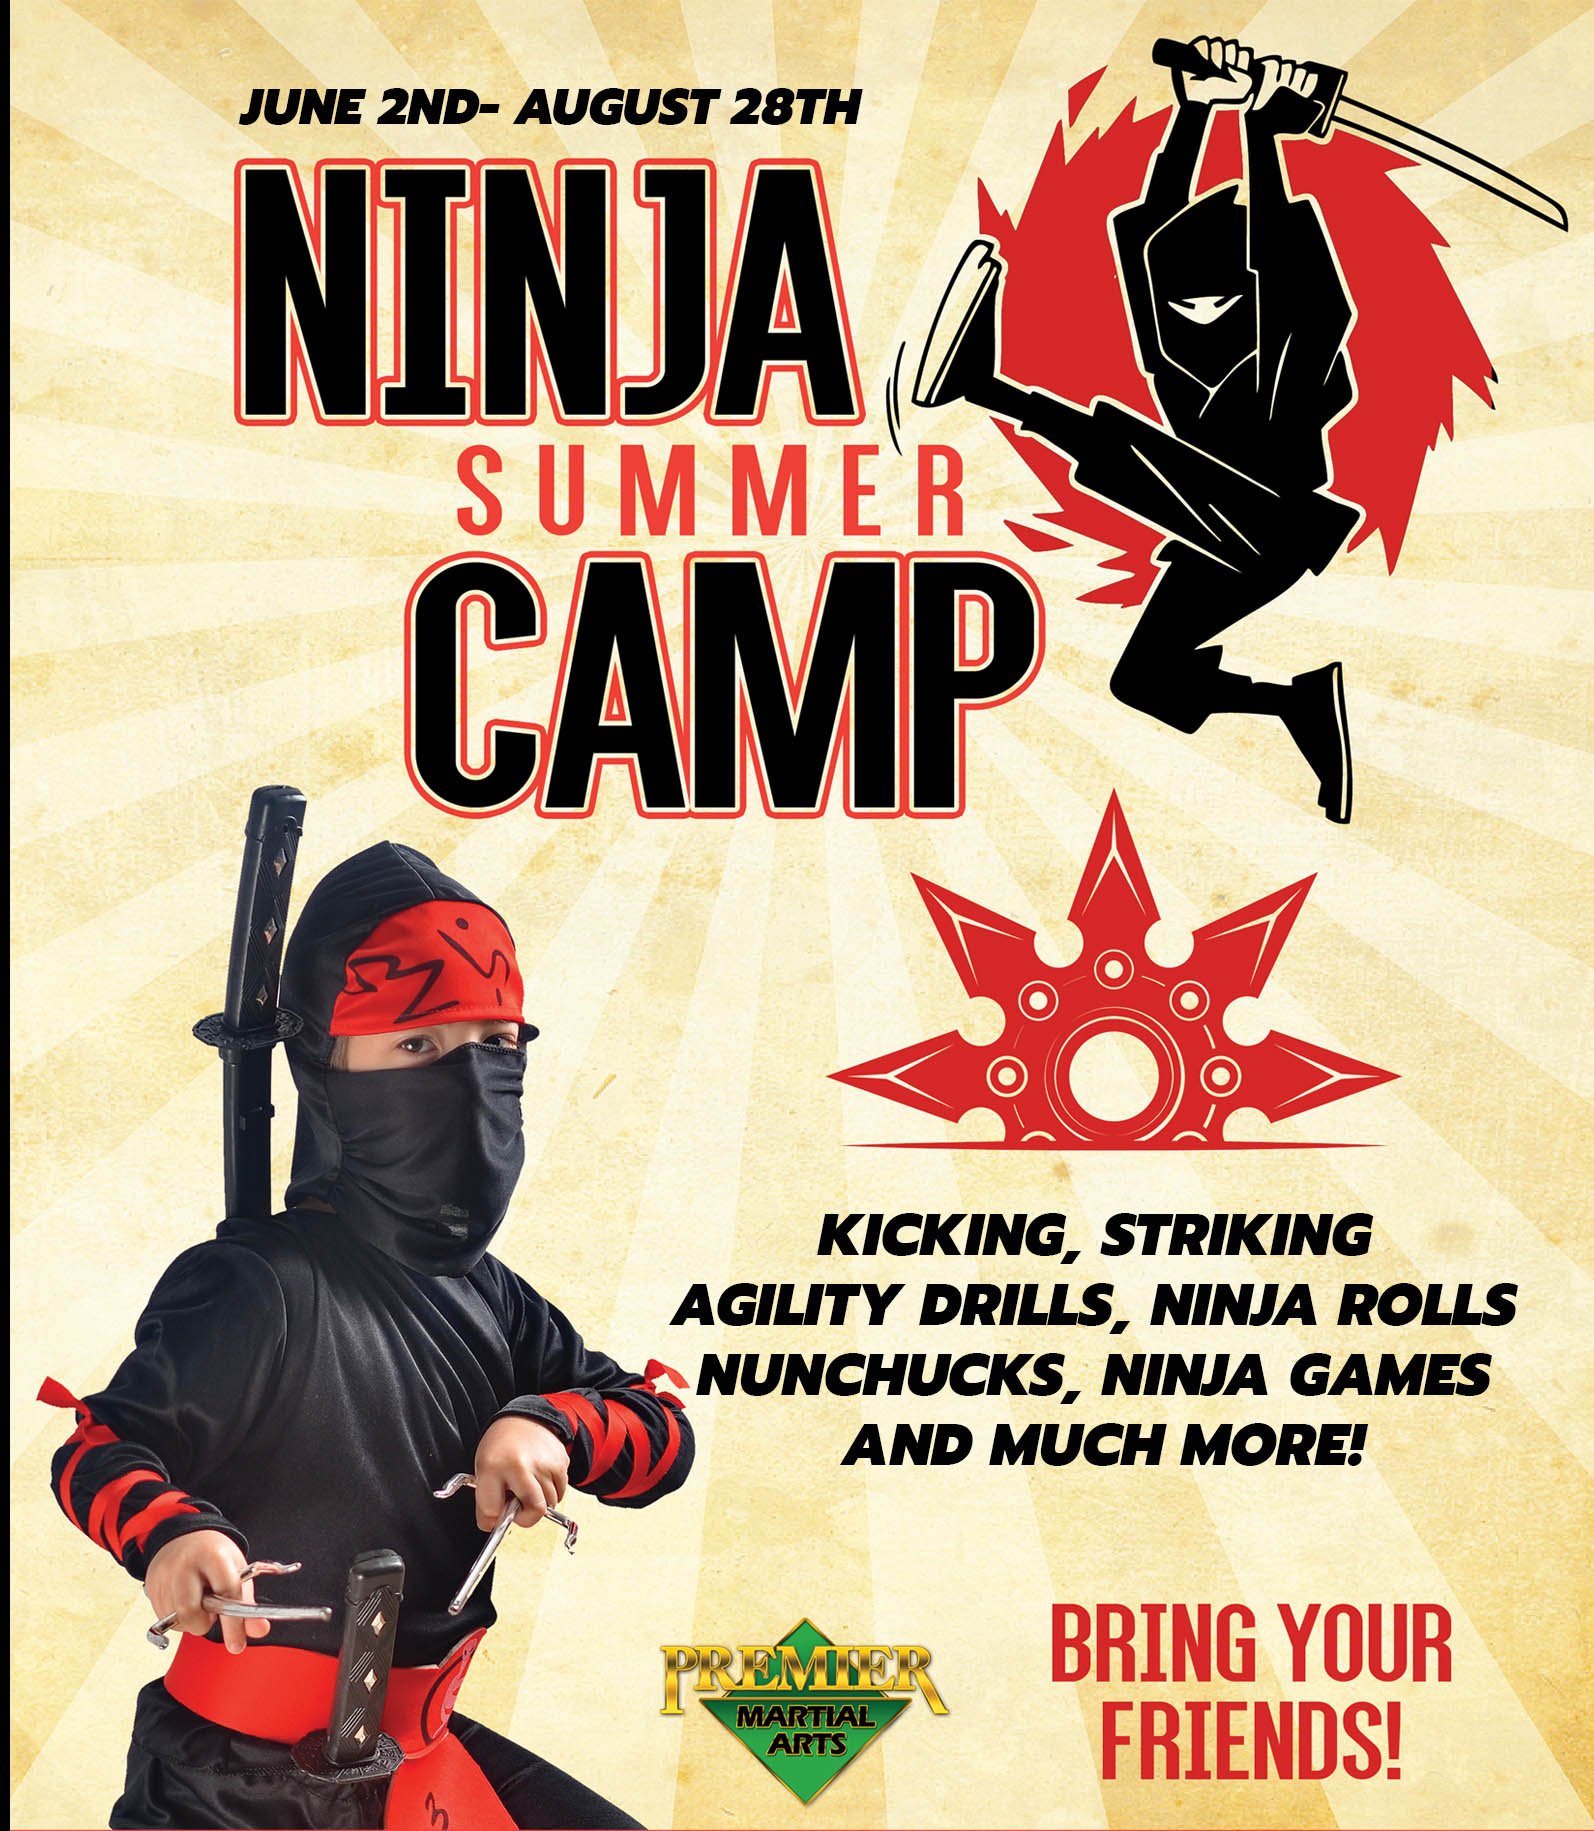 アウトドア ストーブ/コンロ Ninja Summer Camp, Premier Martial Arts at Premier Martial Arts 